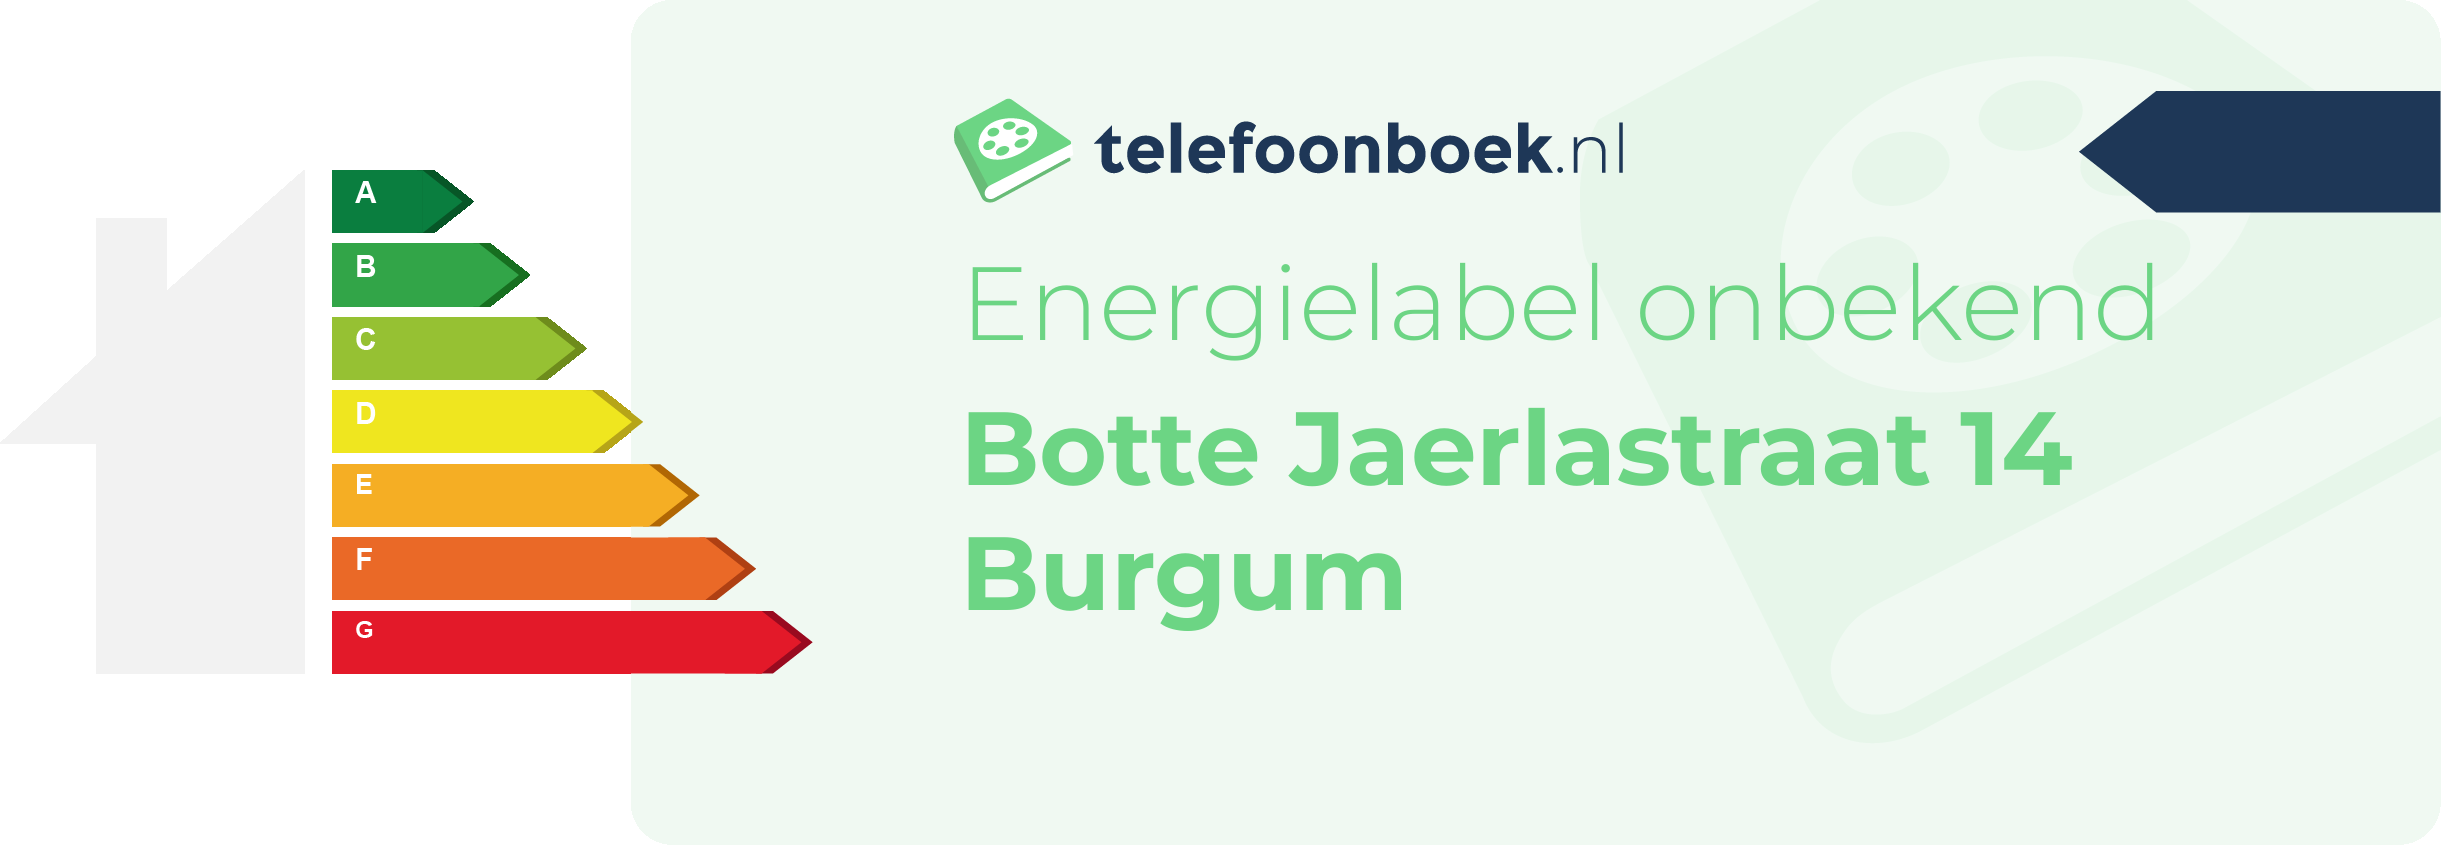 Energielabel Botte Jaerlastraat 14 Burgum